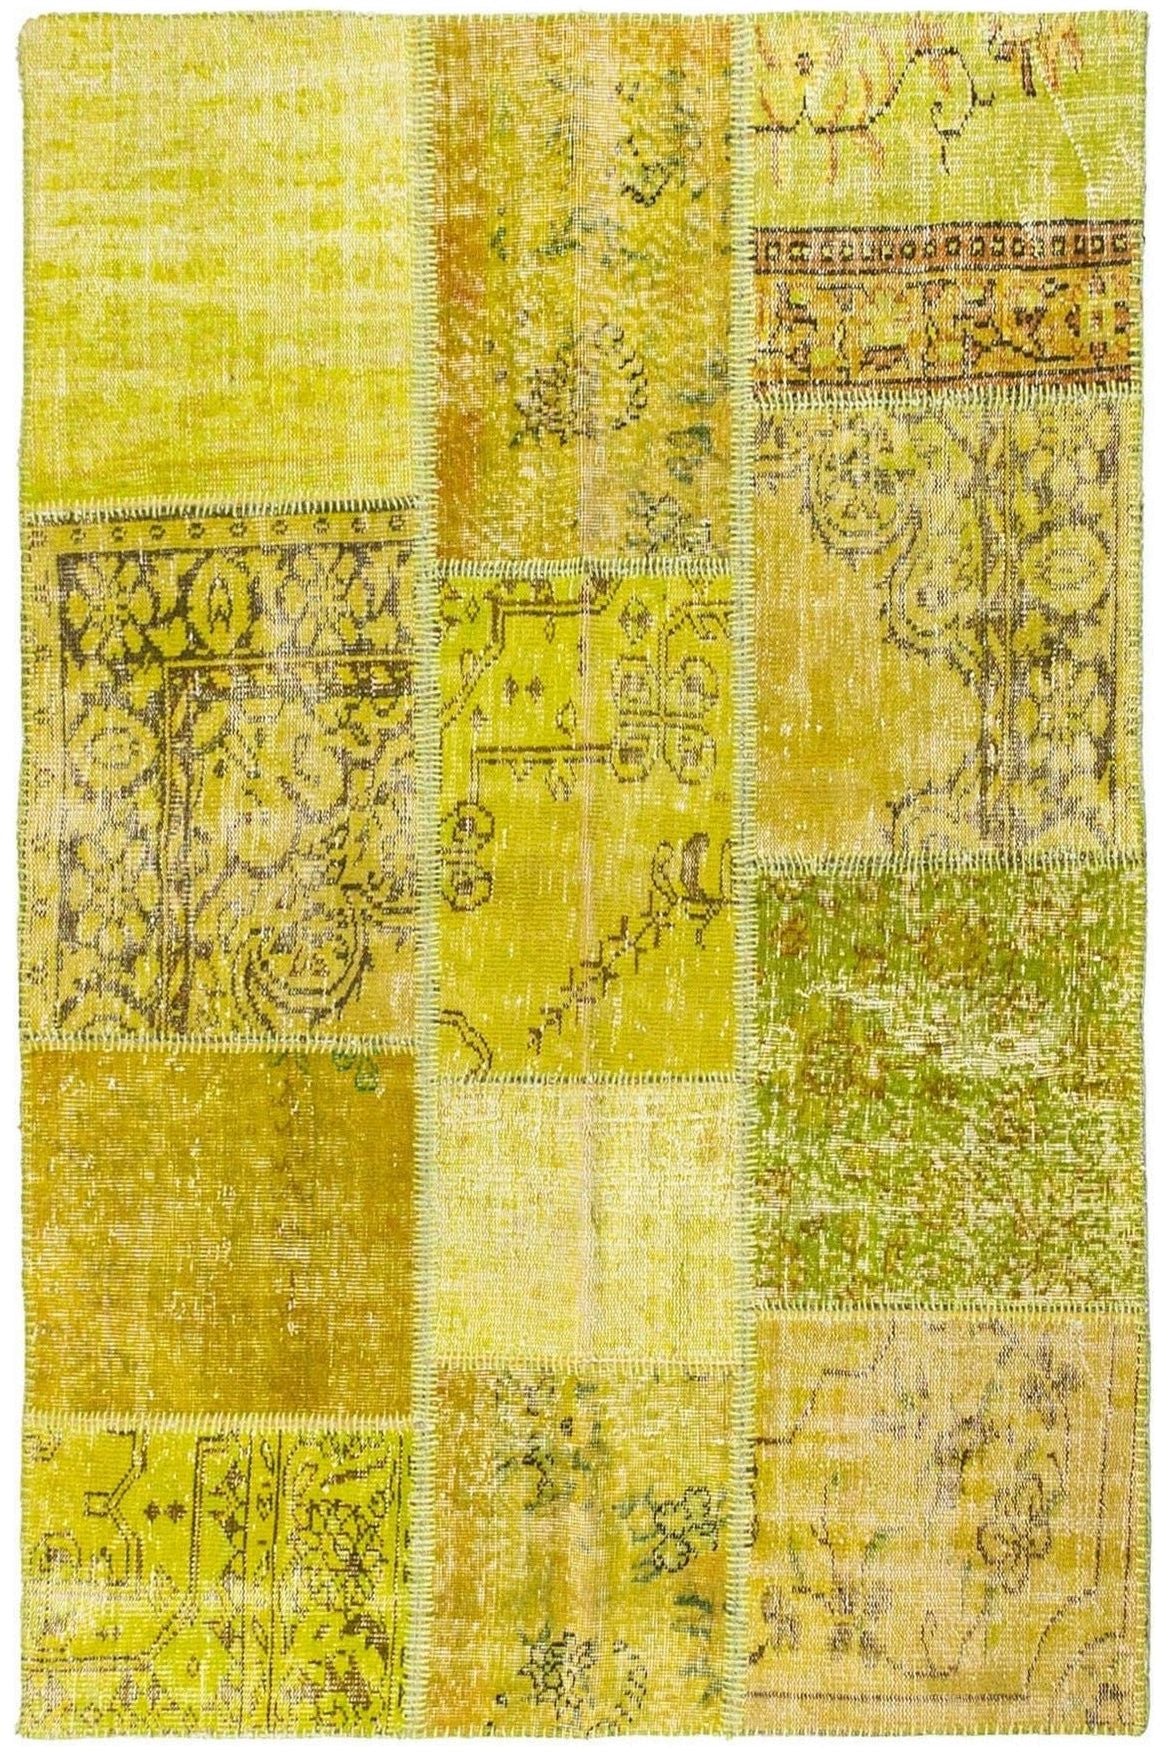 #Turkish_Carpets_Rugs# #Modern_Carpets# #Abrash_Carpets#Abrash-Bahrain-1177-135X196